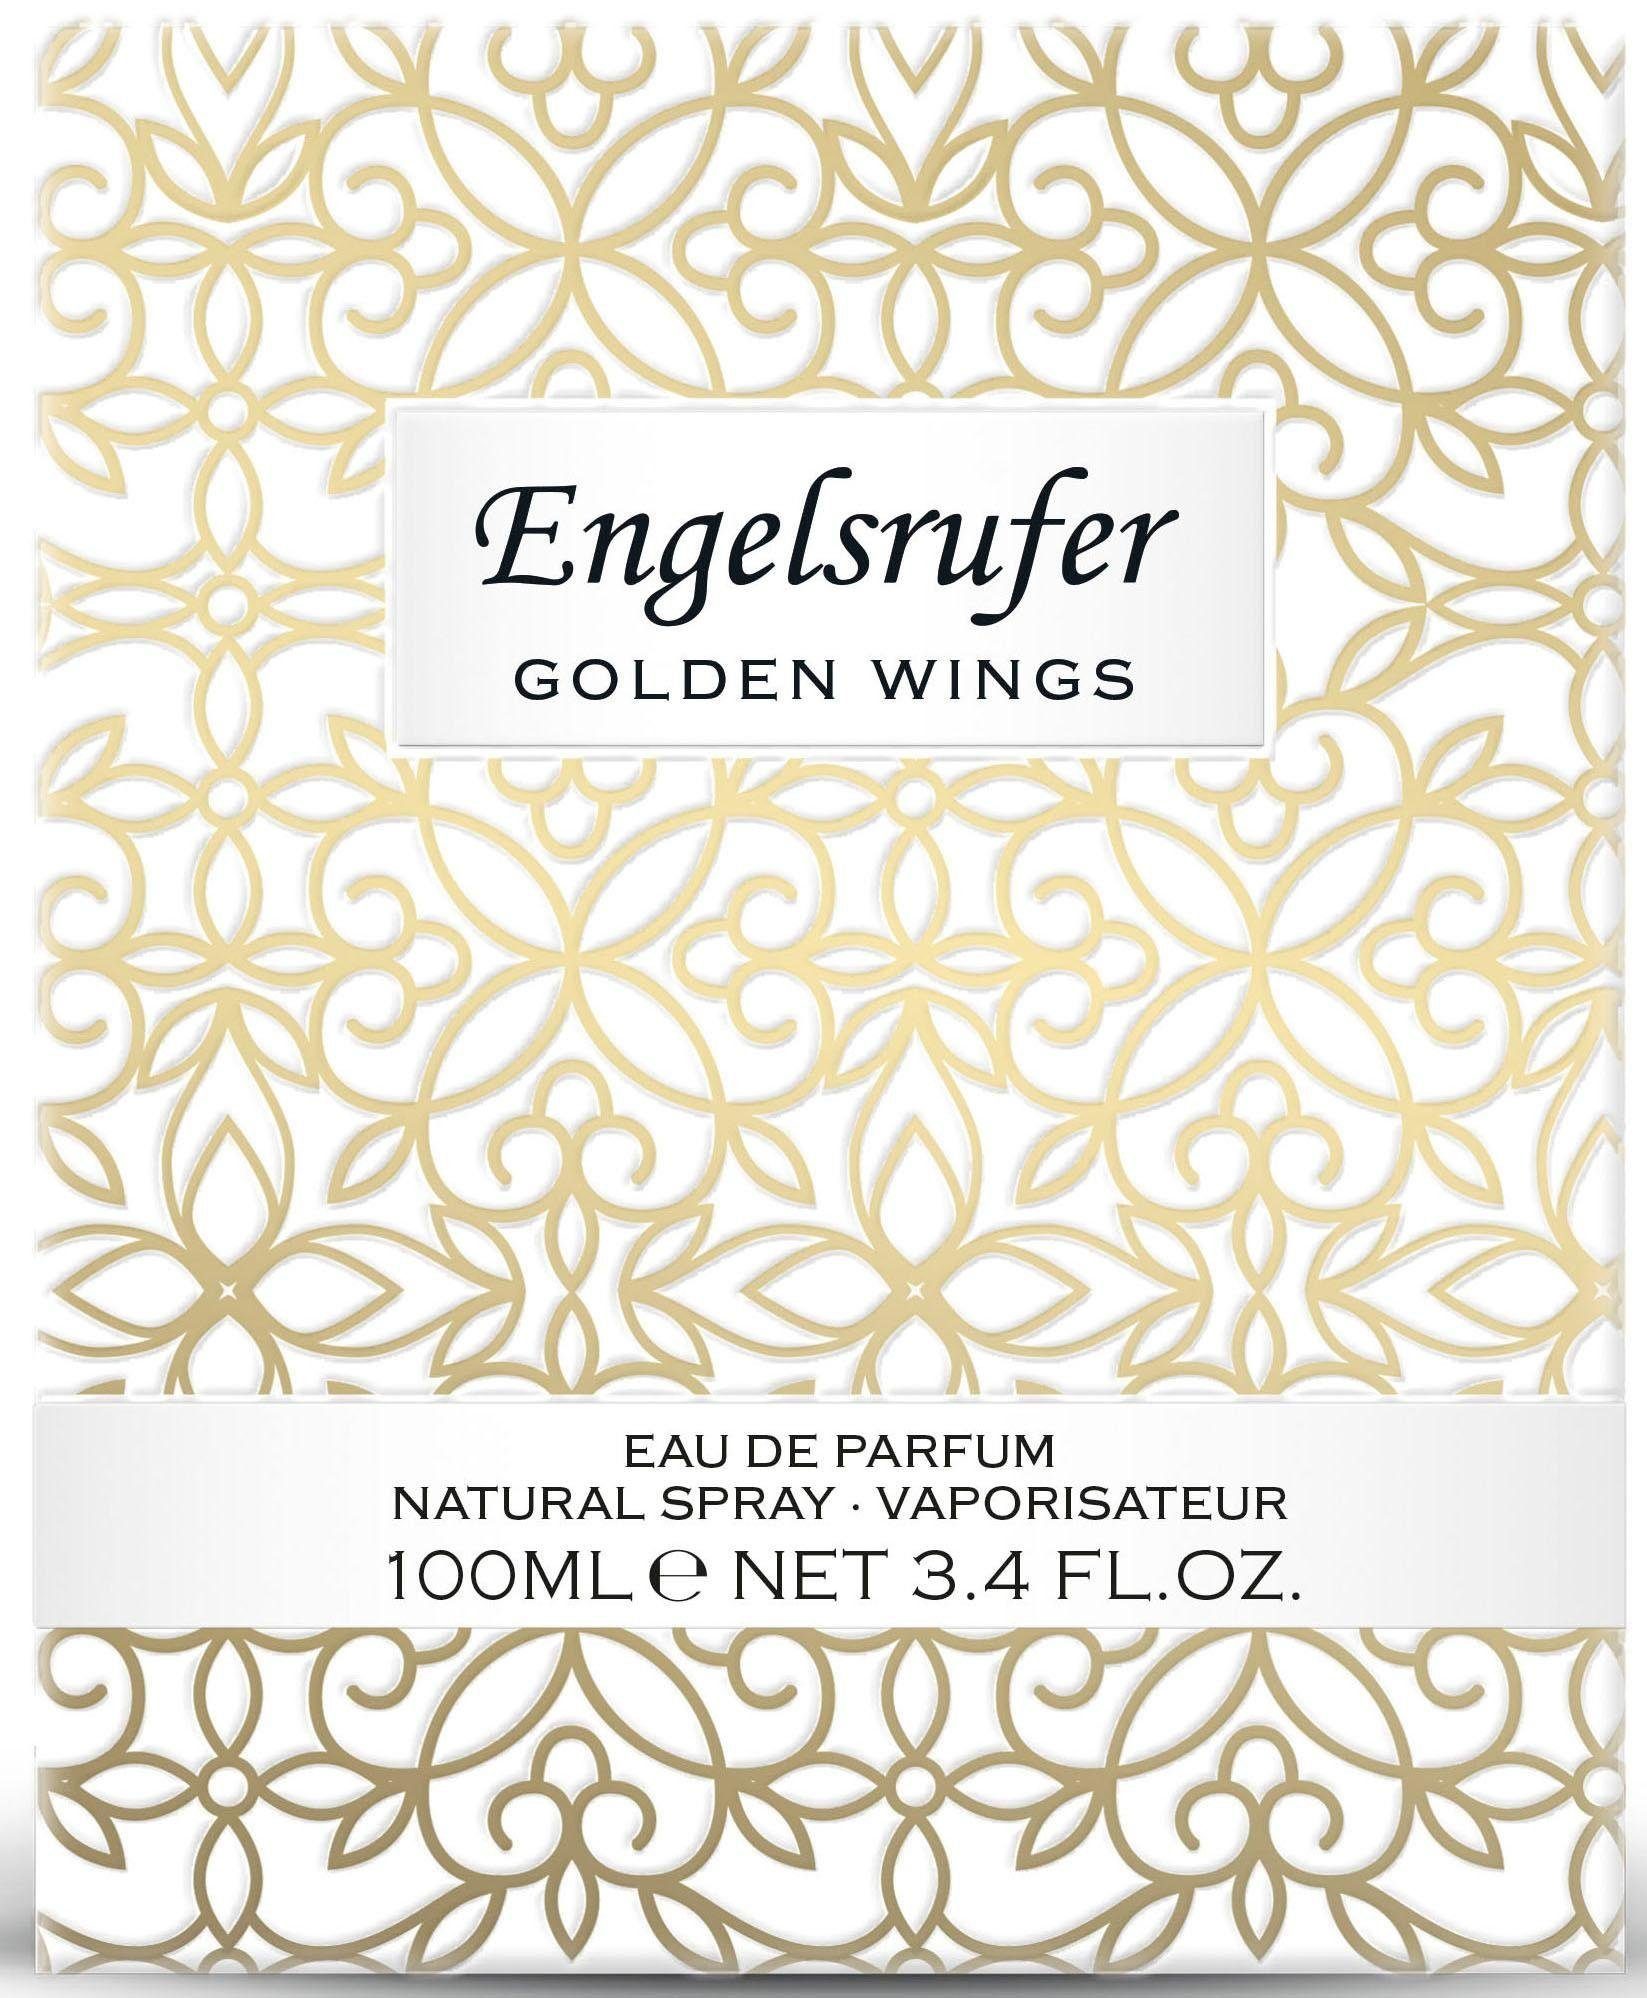 Engelsrufer Eau de Wings Parfum Golden